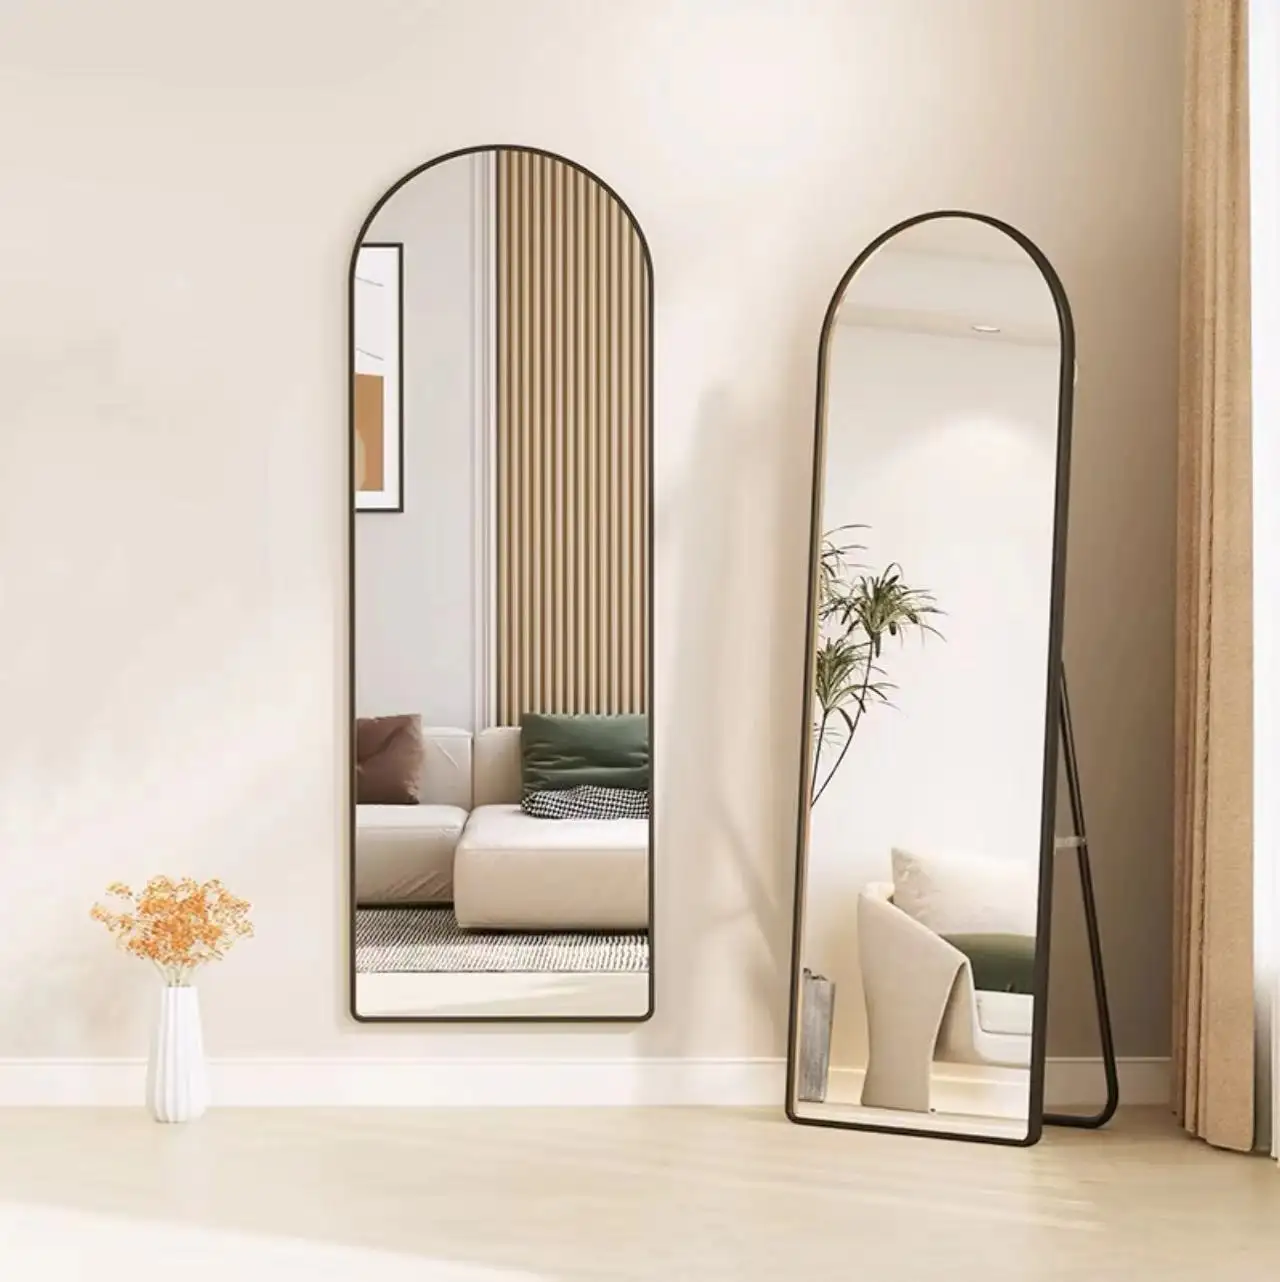 Moldura de metal em forma de arco para decoração de casa de luxo moderna, espelho grande de comprimento total montado na parede com vidro de alta qualidade